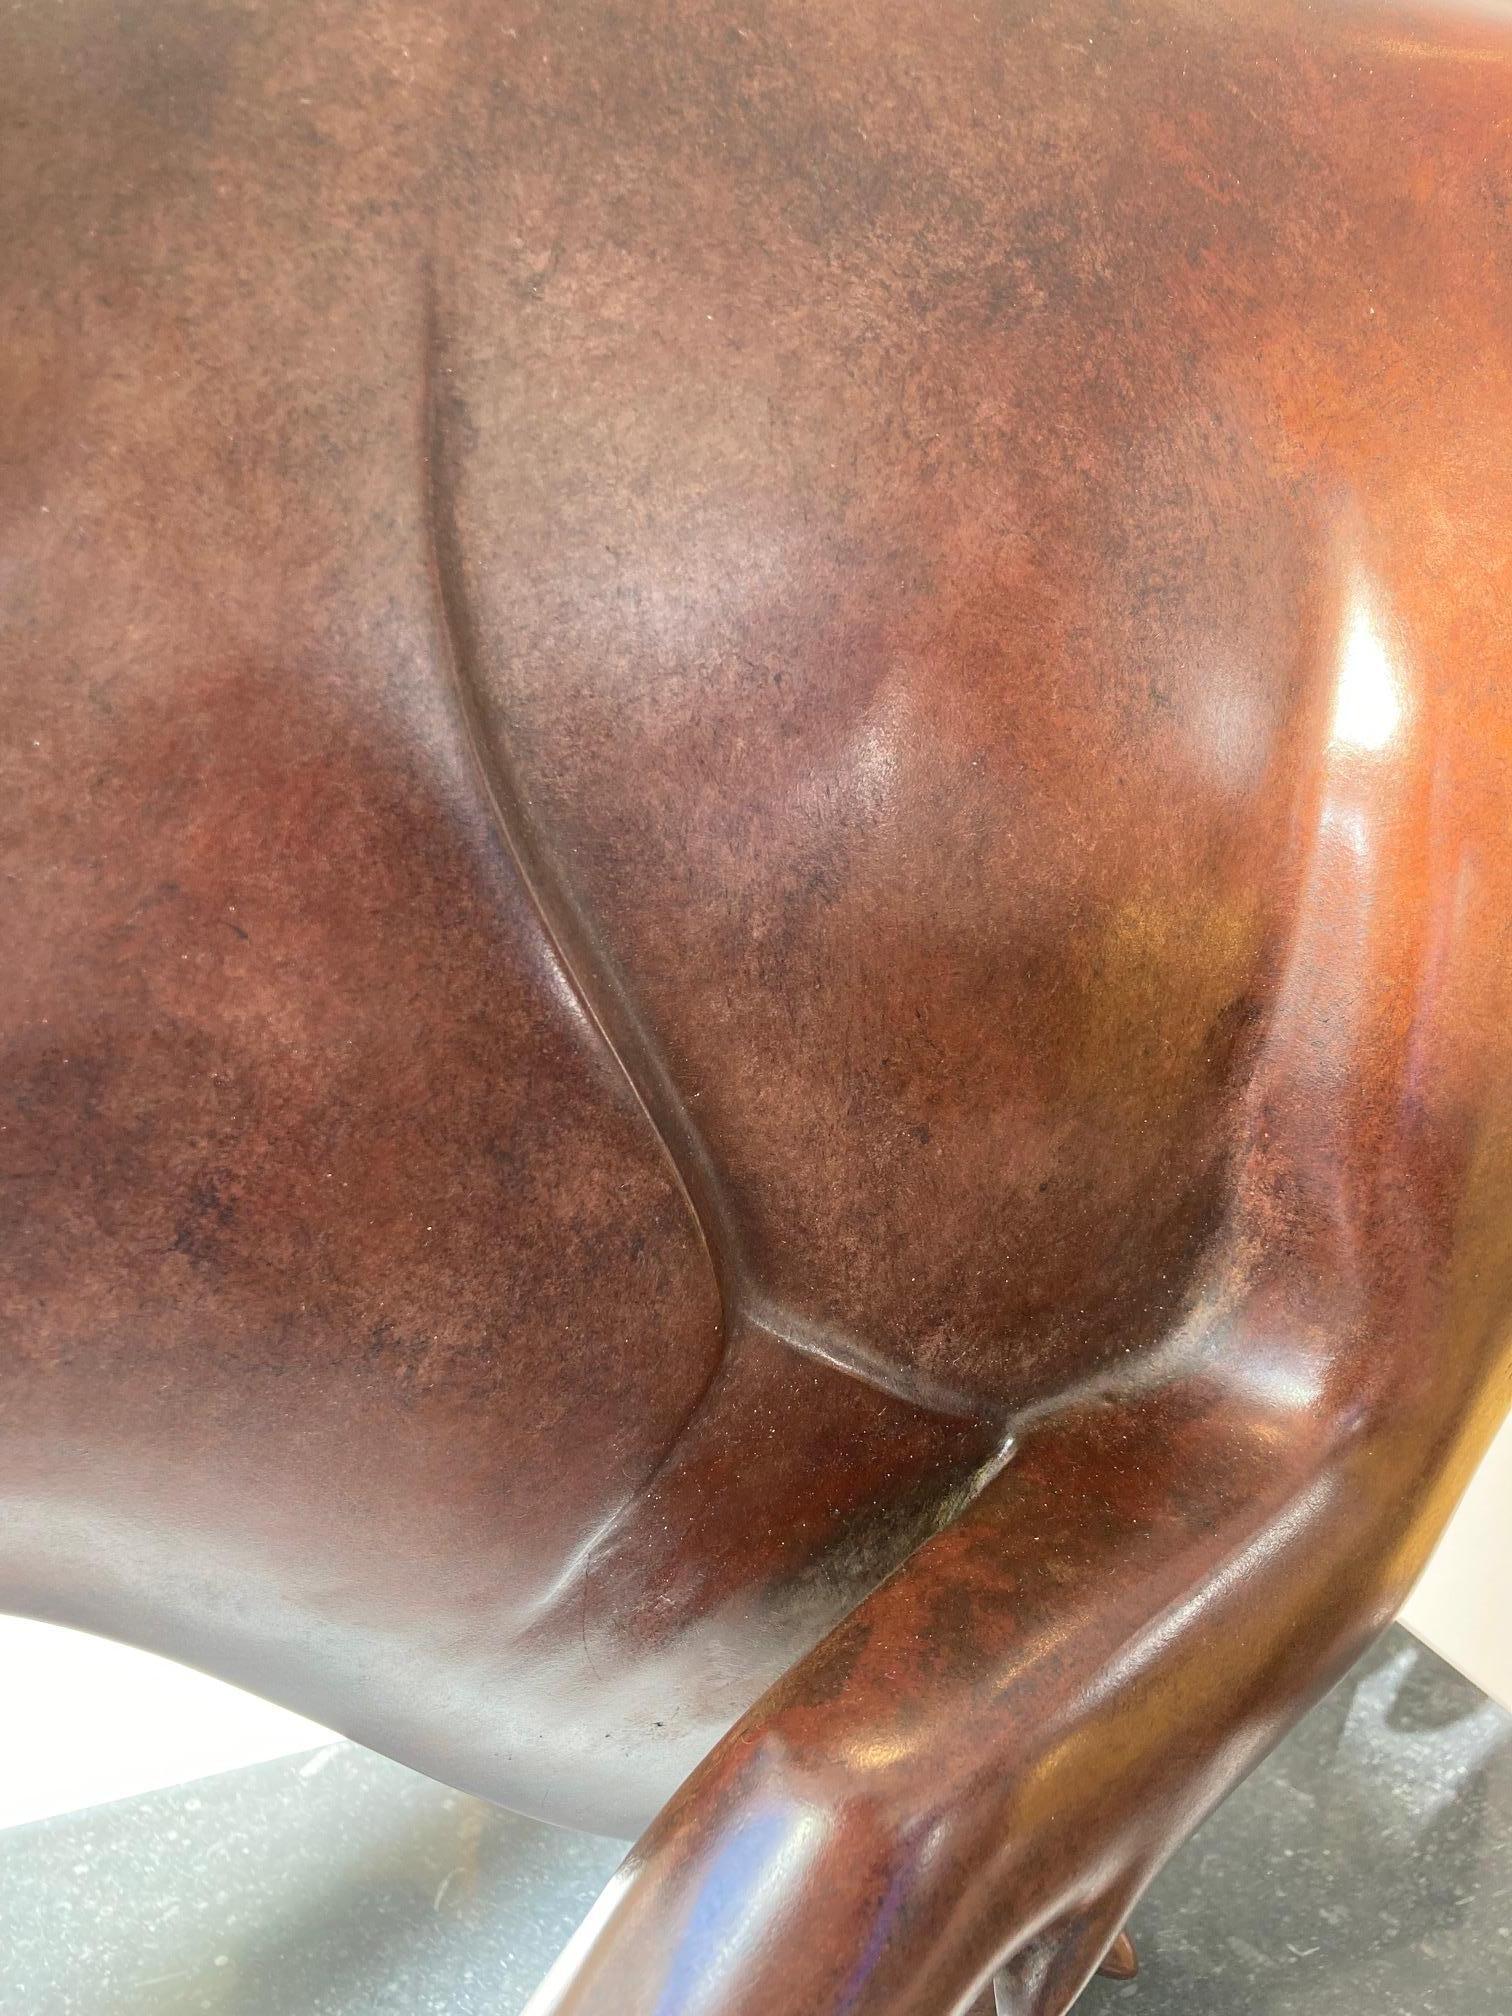 Everzwijn Nr. 2 Wildschwein Big Brown Bronzeskulptur Wildlife Limitierte Auflage

Evert den Hartog (geboren 1949 in Groot-Ammers, Niederlande) absolvierte eine Ausbildung zum Bildhauer an der Rotterdamer Akademie der Bildenden Künste. In den Jahren